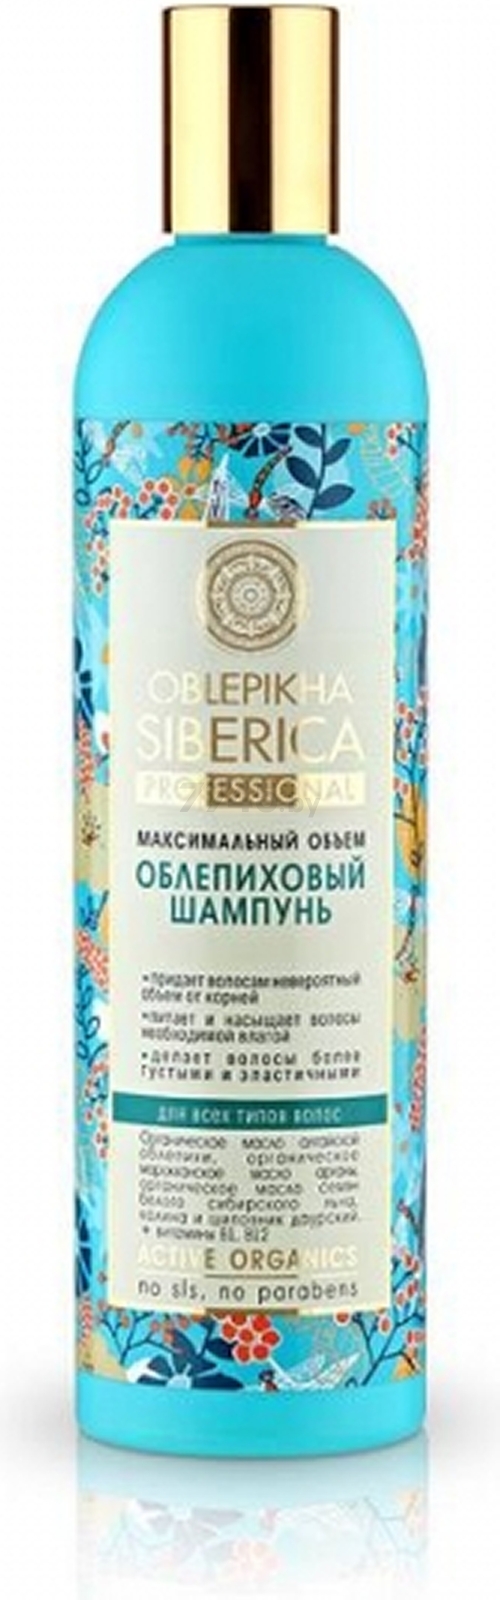 Шампунь NATURA SIBERICA Oblepikha Siberica Professional Облепиховый для всех типов волос 400 мл (4607174432345)